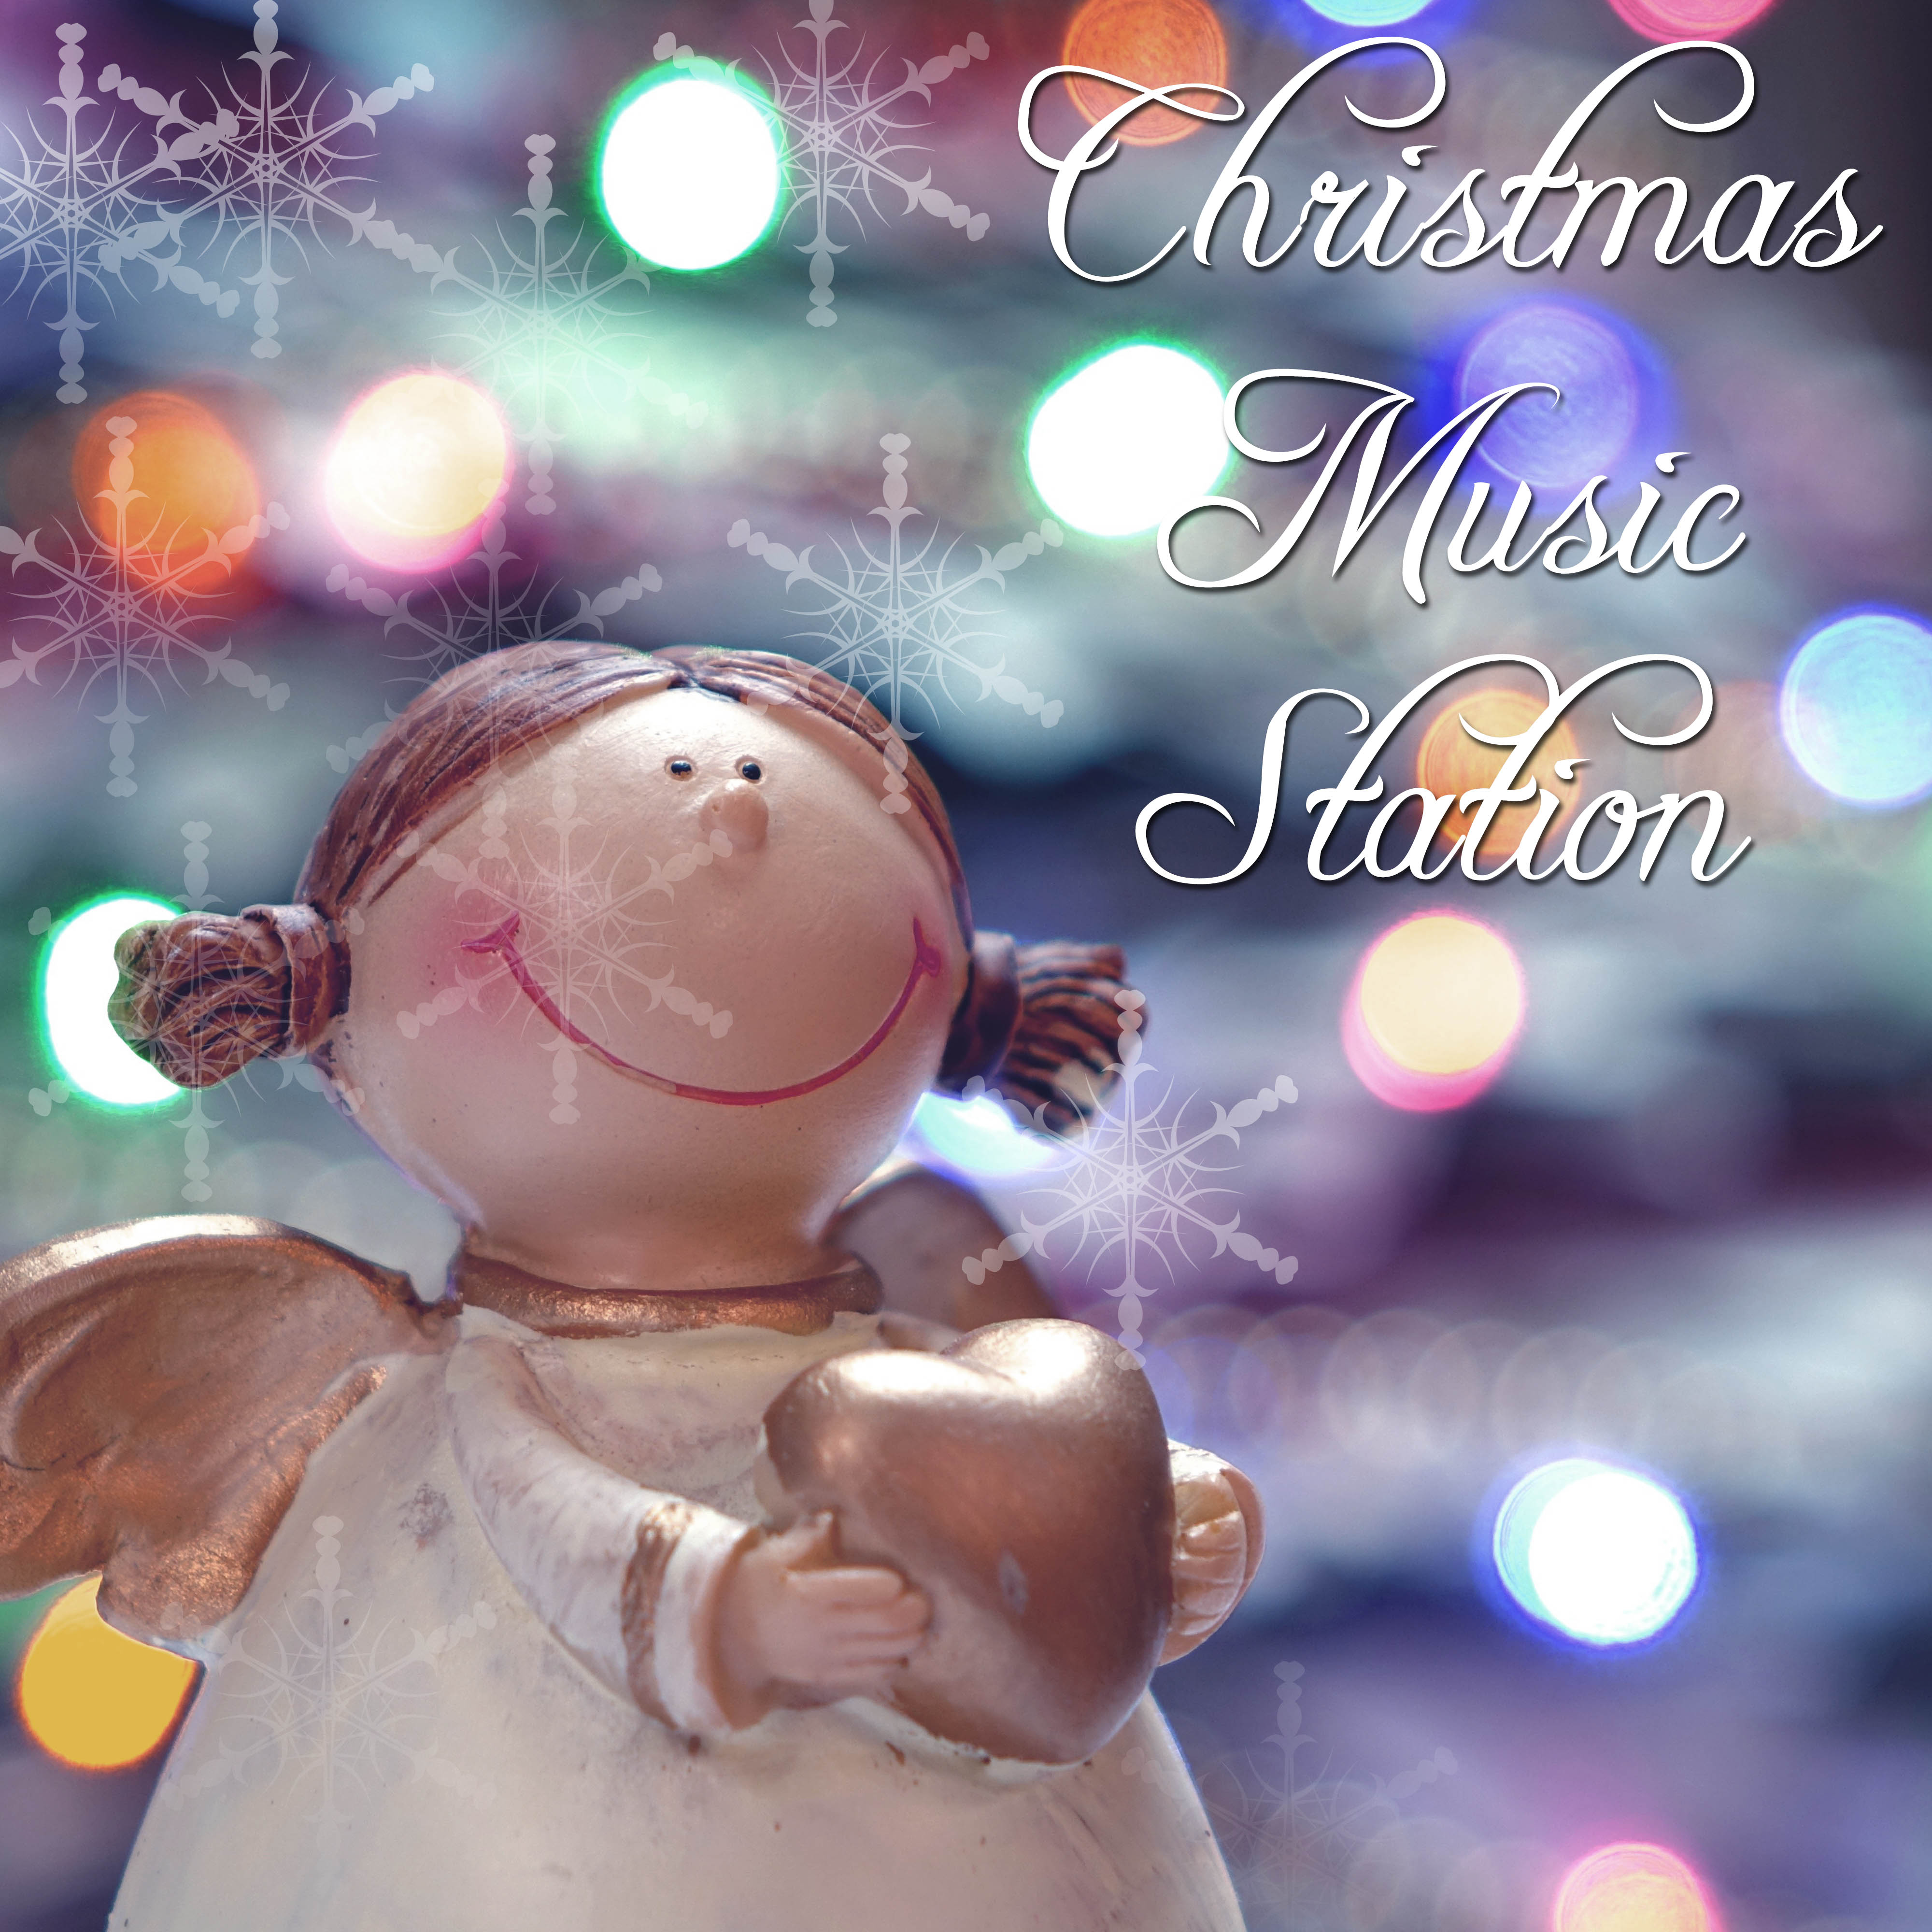 Christmas Music Station - Traditional Christmas Music for Family Reunion